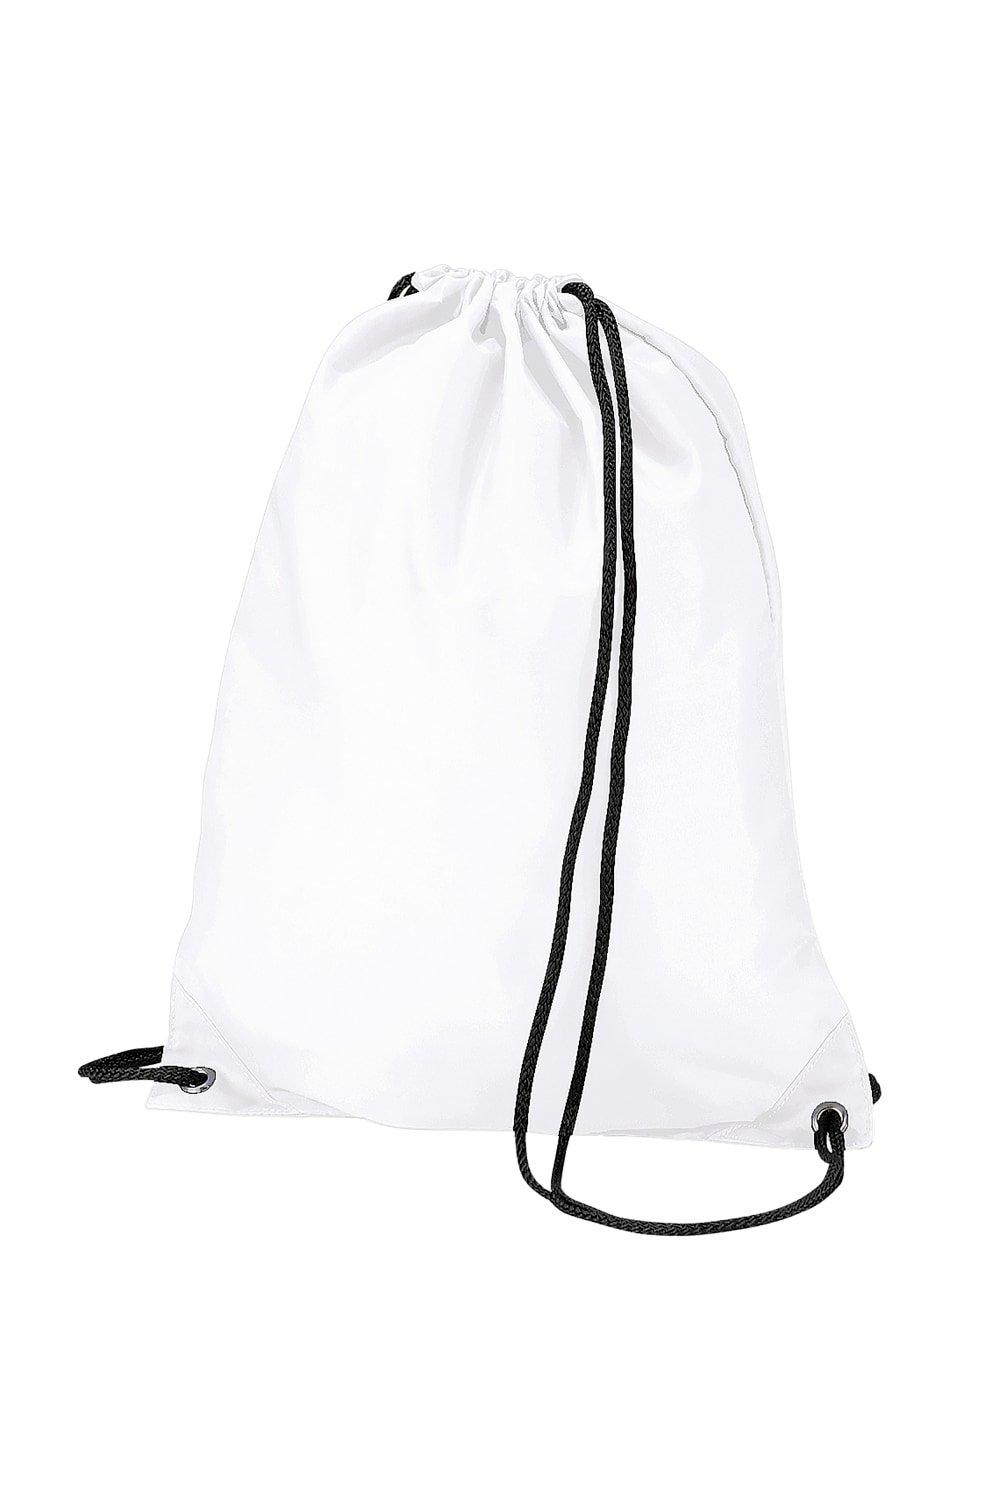 Бюджетная водостойкая спортивная сумка Gymsac на шнурке (11 литров) Bagbase, белый защита на решетку радиатора 70 х 65 х 26 см оксфорд черный